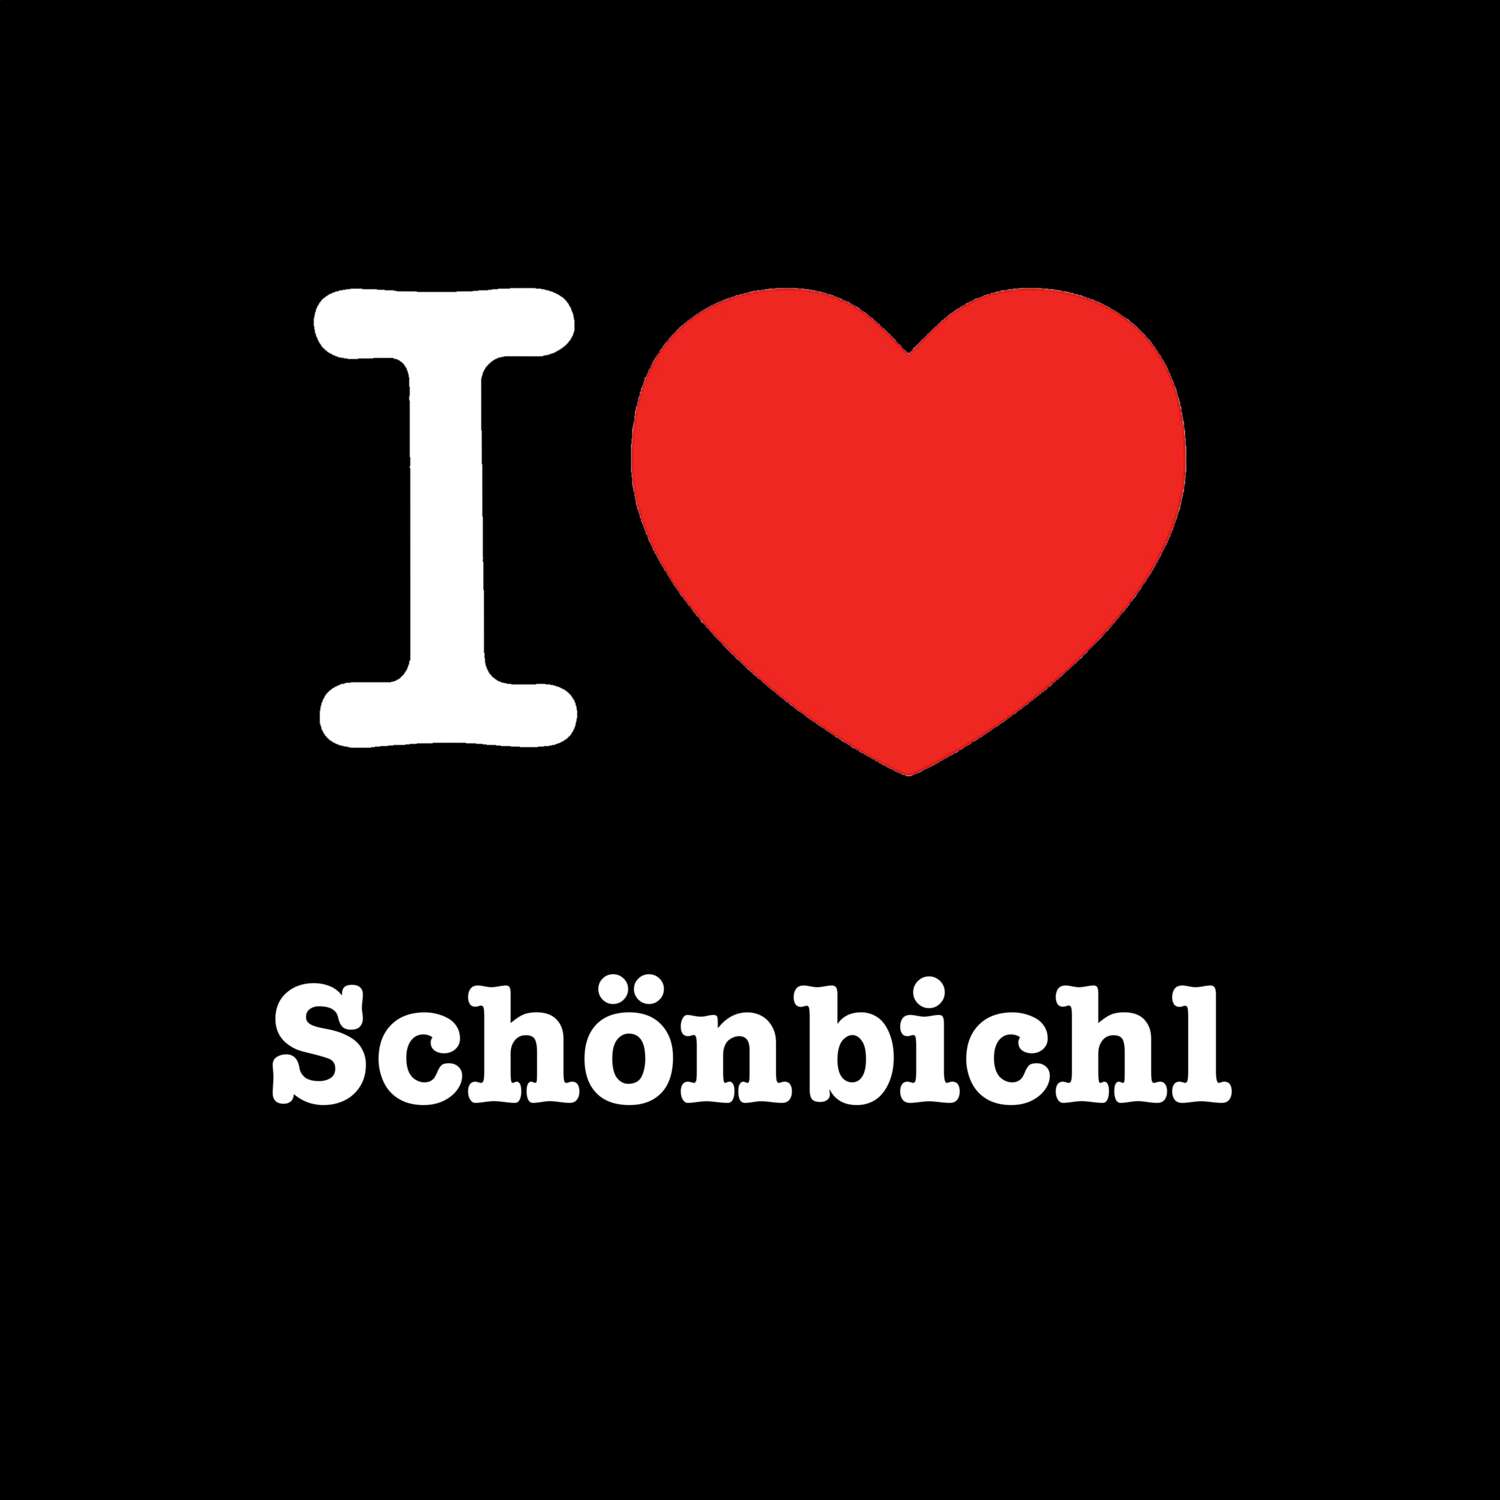 Schönbichl T-Shirt »I love«